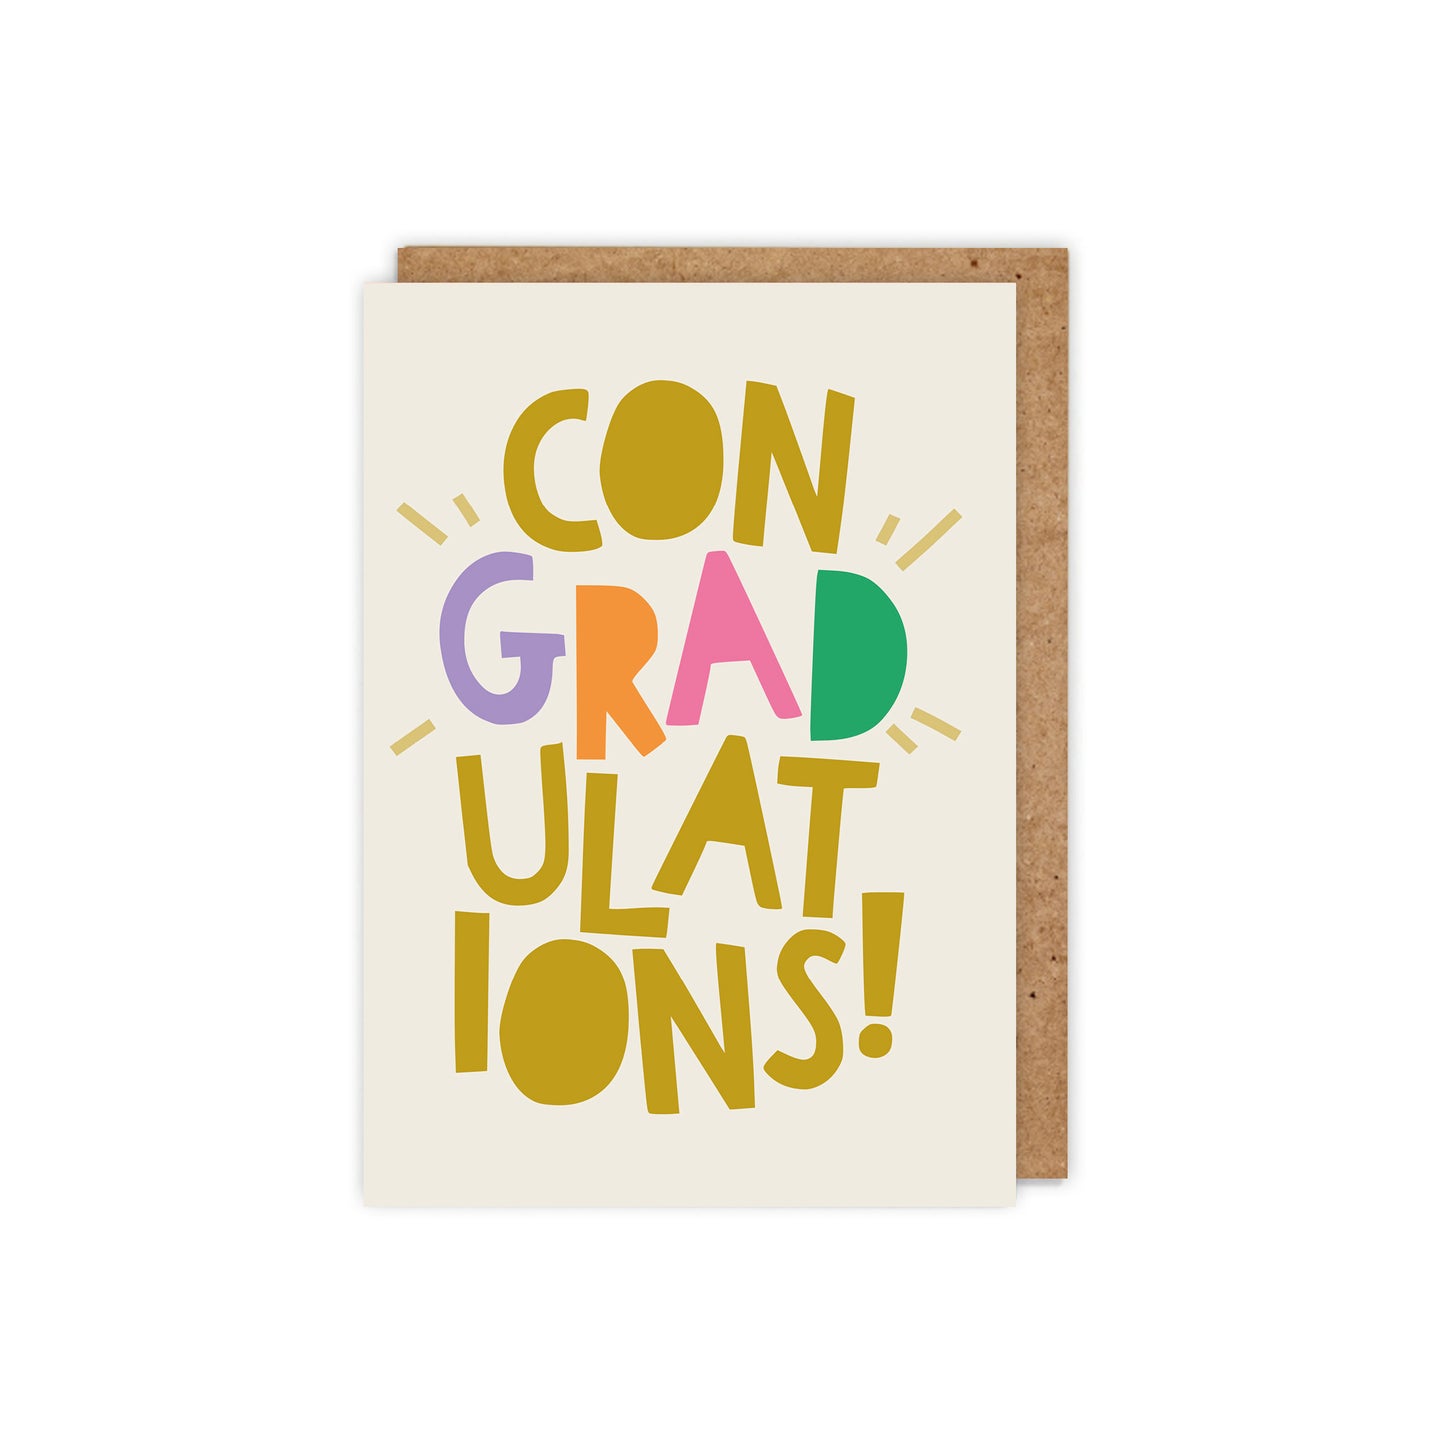 Con-GRAD-ulations! Typographic graduation card